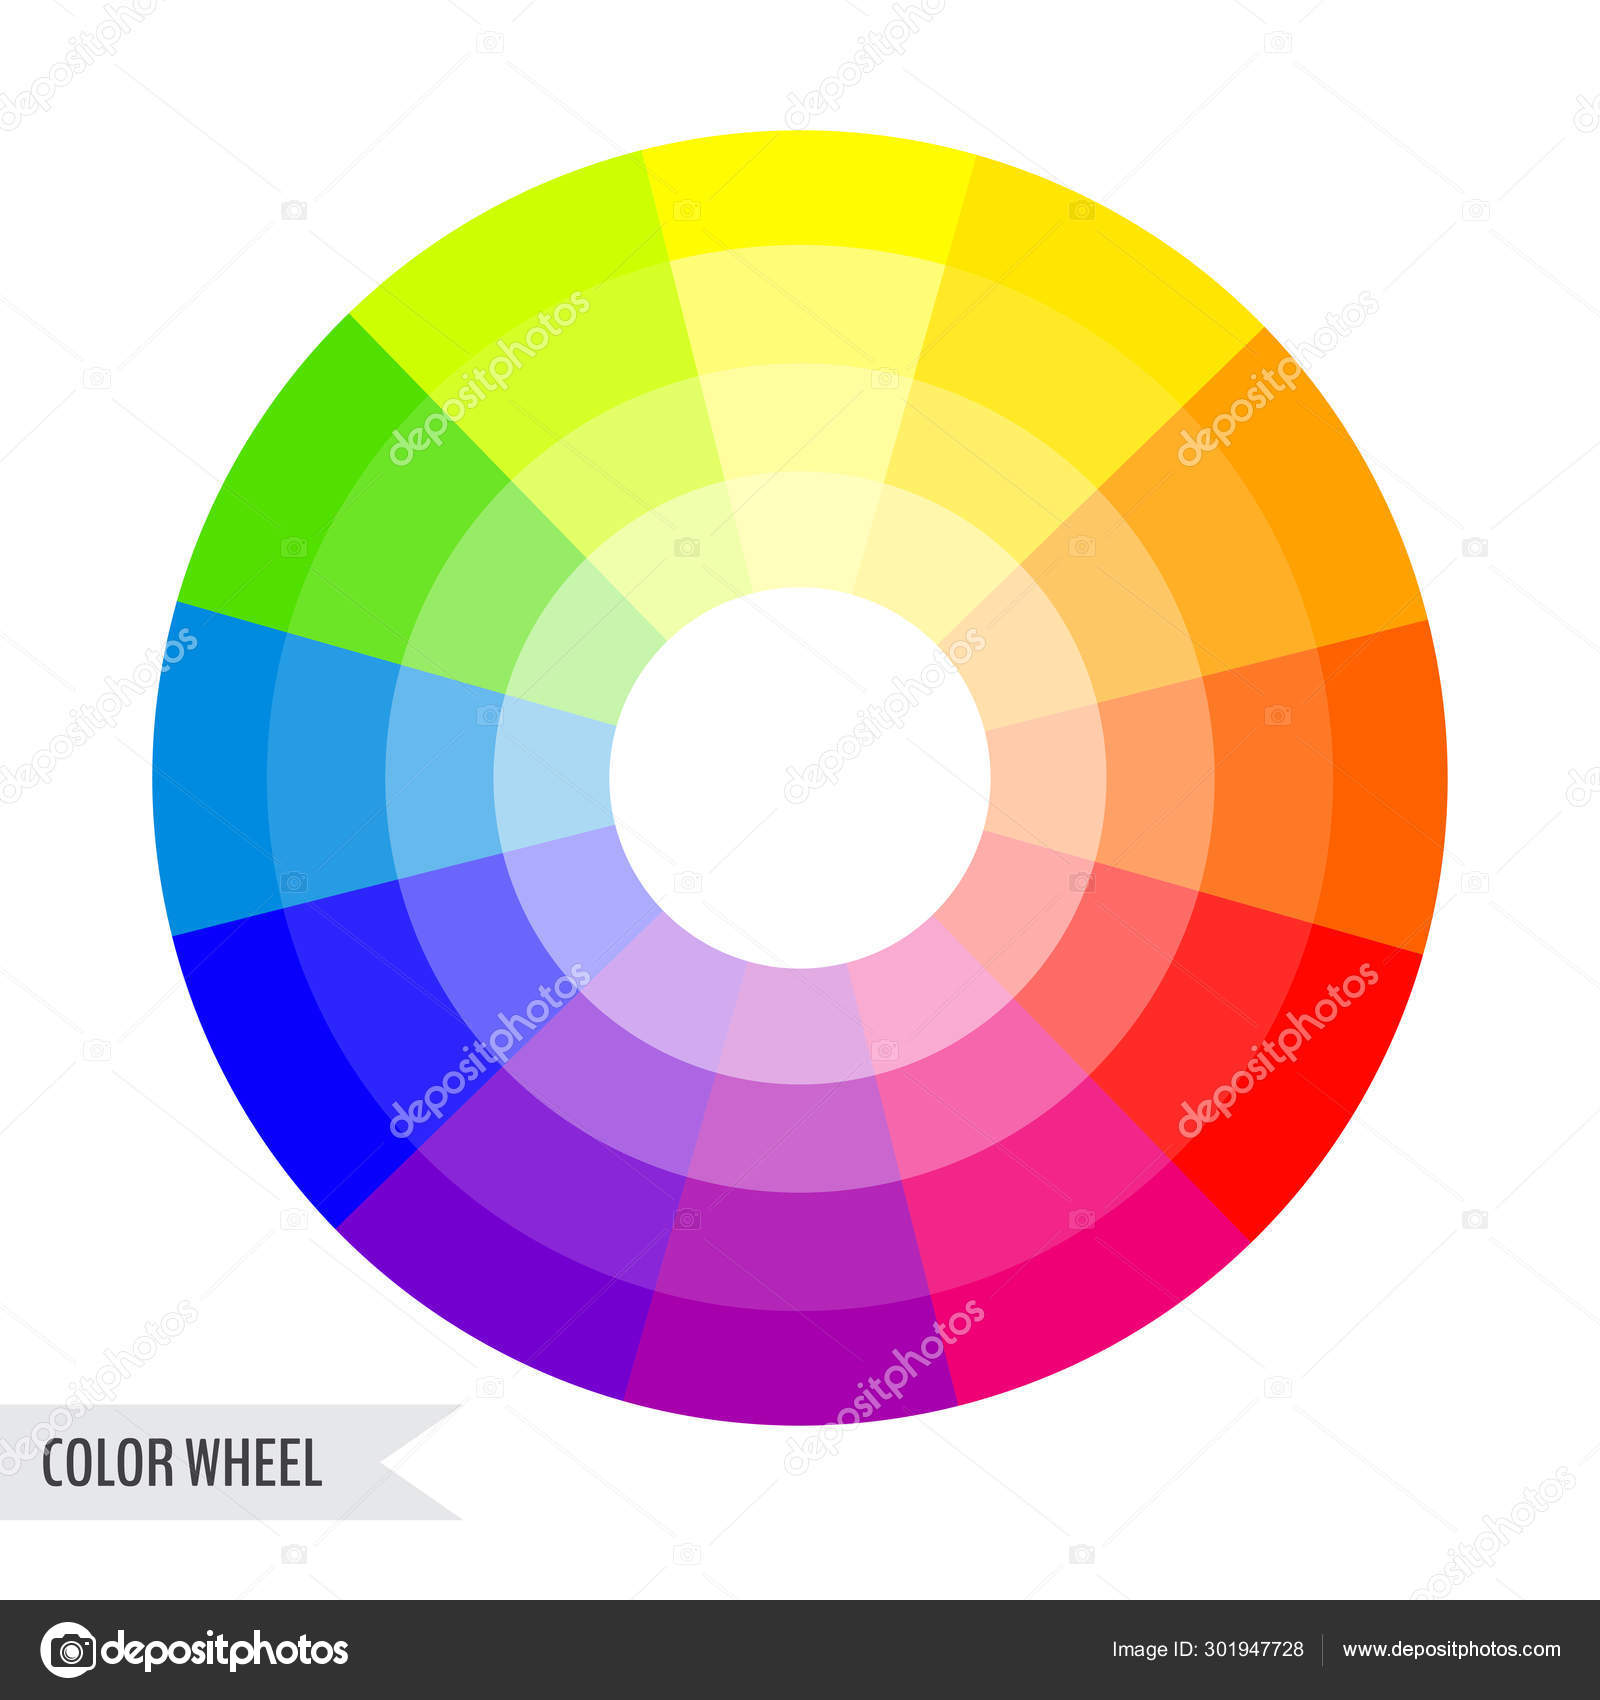 Color wheel chart Stock Vector by ©rioabajorio 301947728